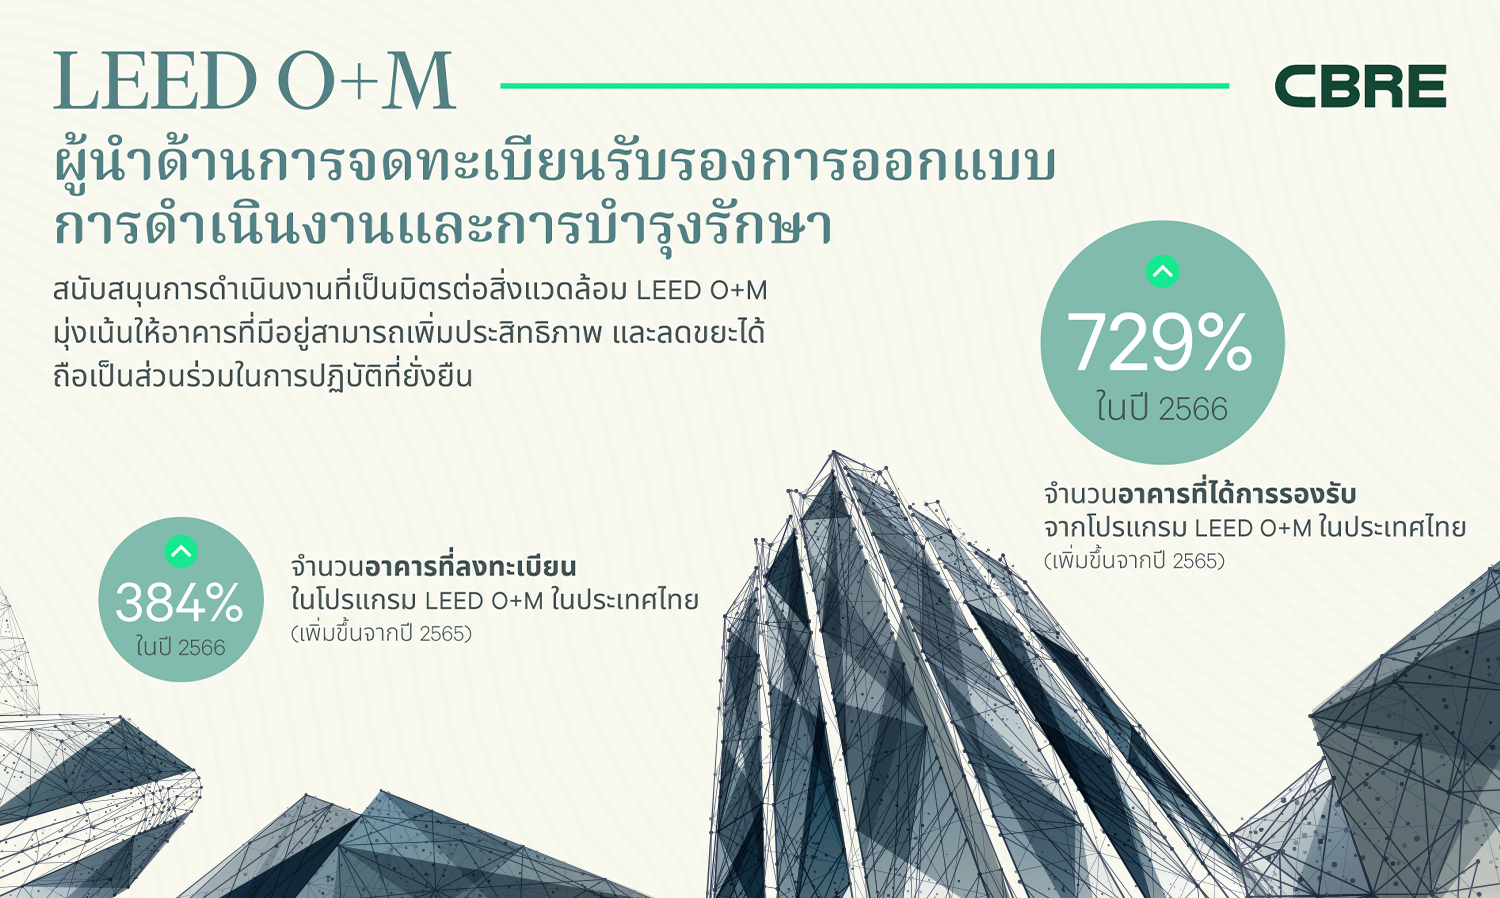 ซีบีอาร์อี ประเทศไทย ผลักดันความยั่งยืน พลิกโฉมอาคารเก่าด้วยเทรนด์ล่าสุด